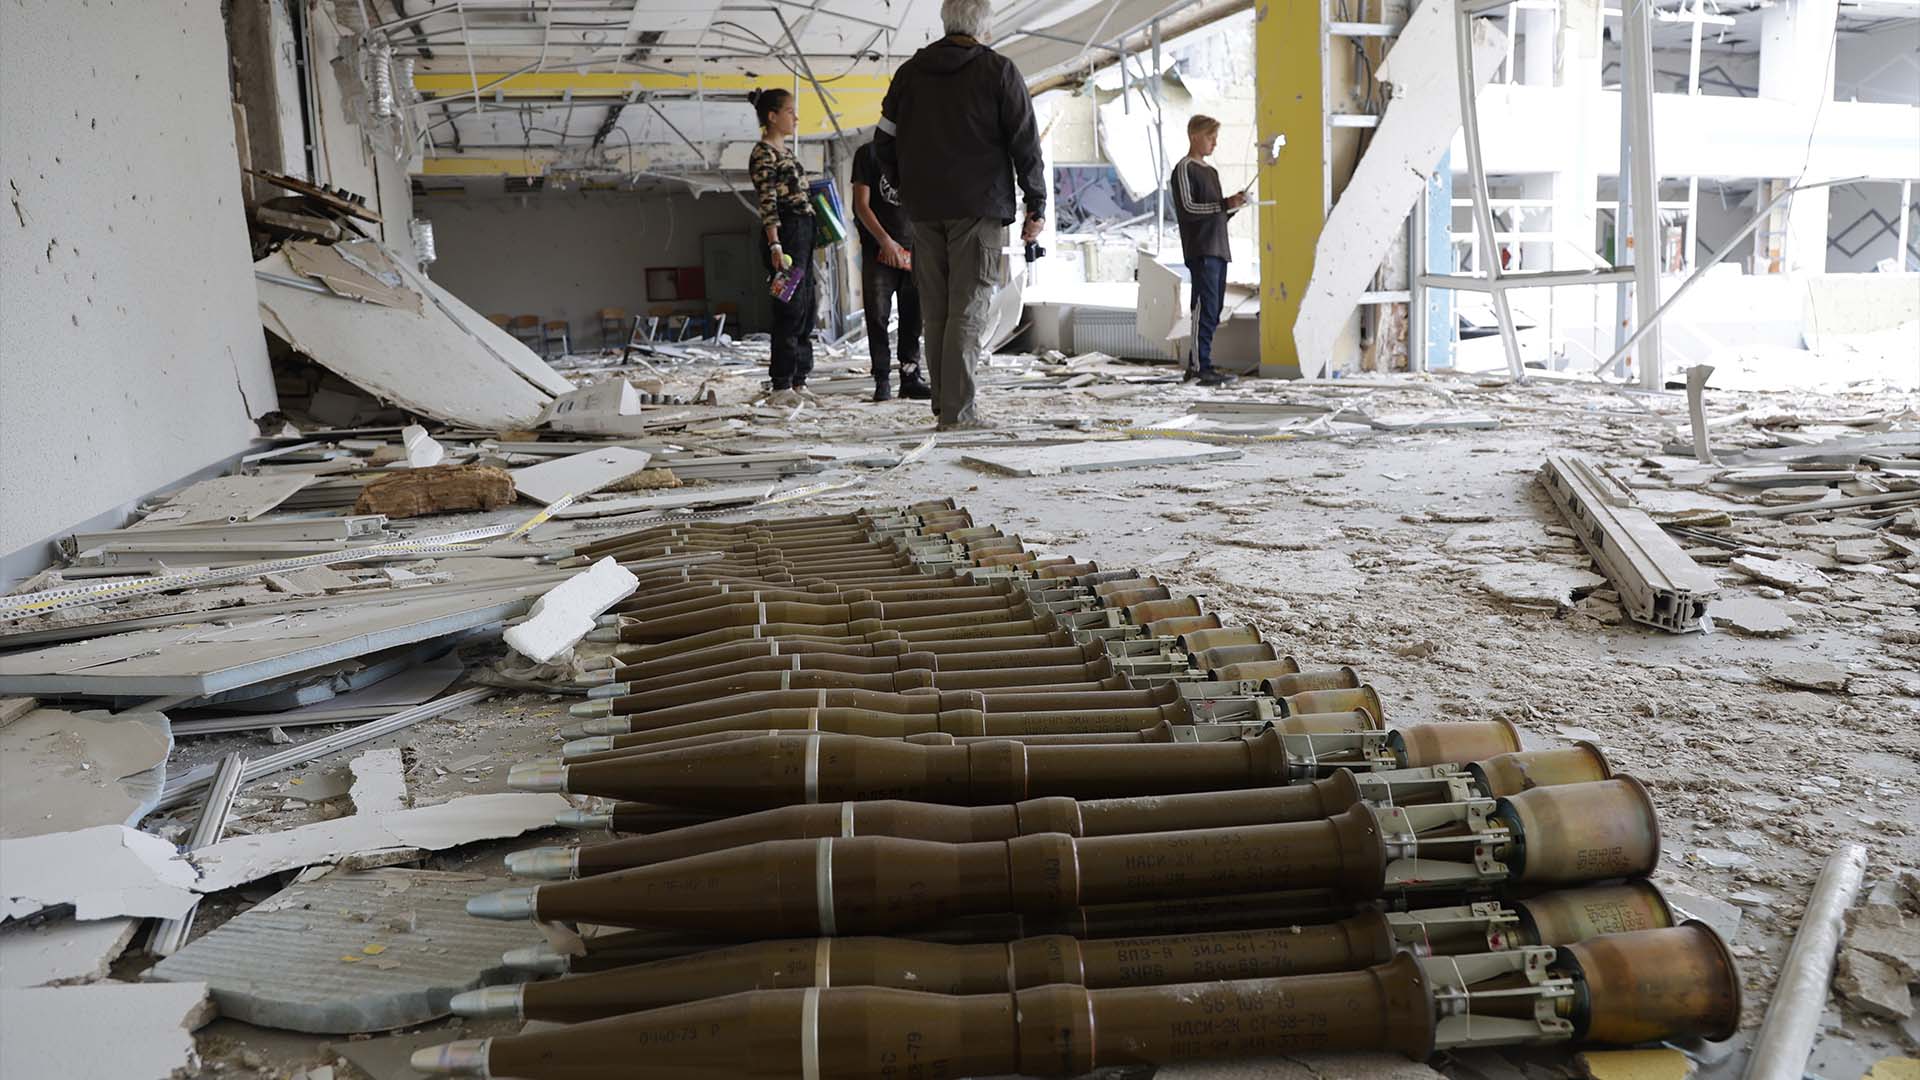 Des obus RPG gisent dans le hall d'une école détruite à Marioupol, dans le territoire sous le gouvernement de la République populaire de Donetsk, dans l'est de l'Ukraine, le lundi 2 mai 2022.